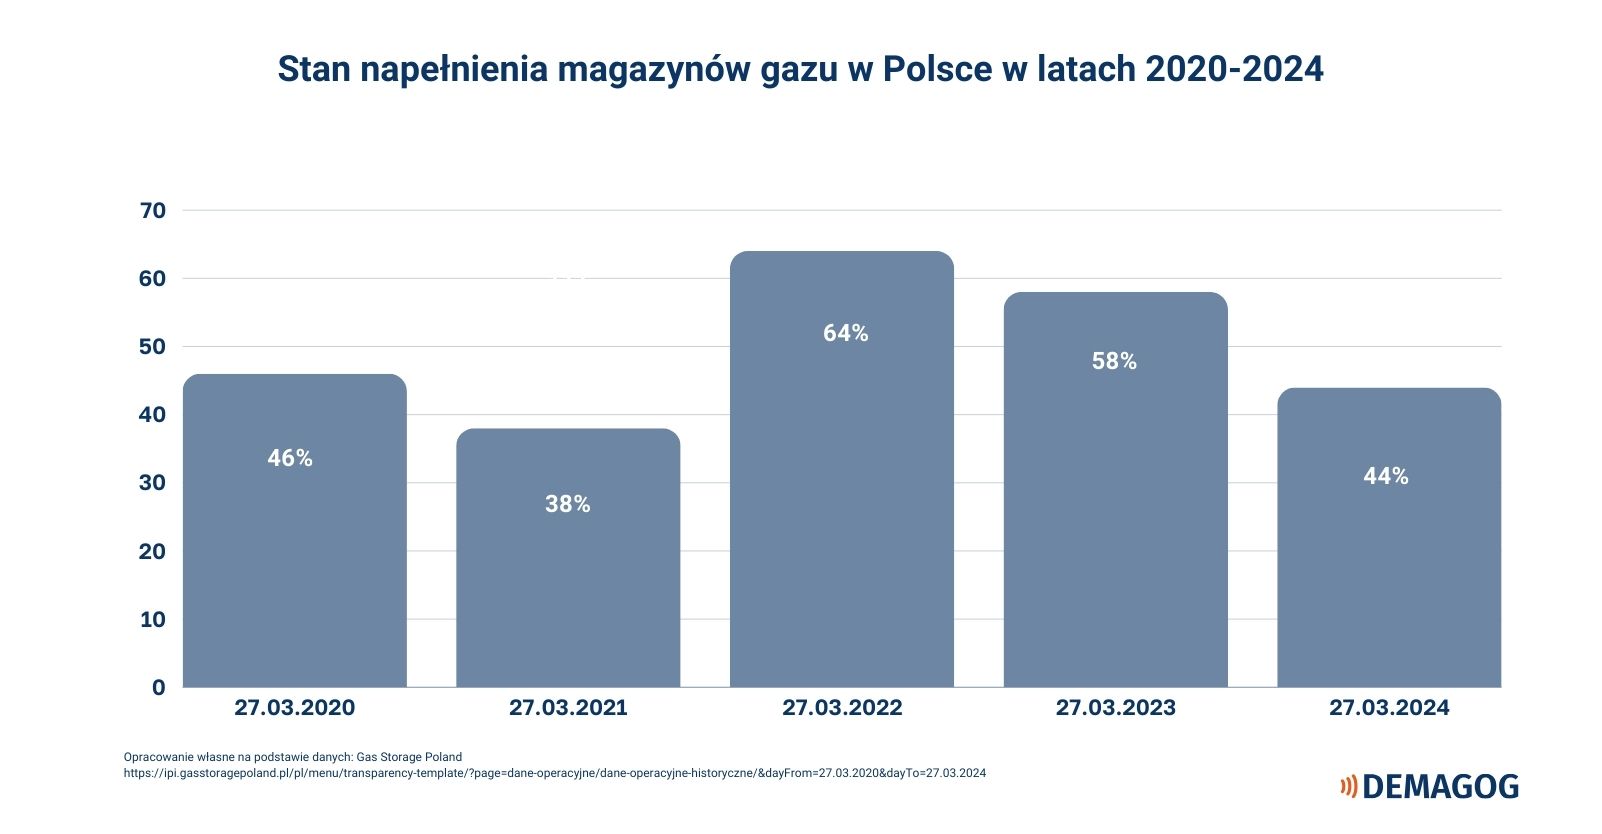 Wykres przedstawiający stan napełnienia magazynów gazu w Polsce w latach 2020-2024. 